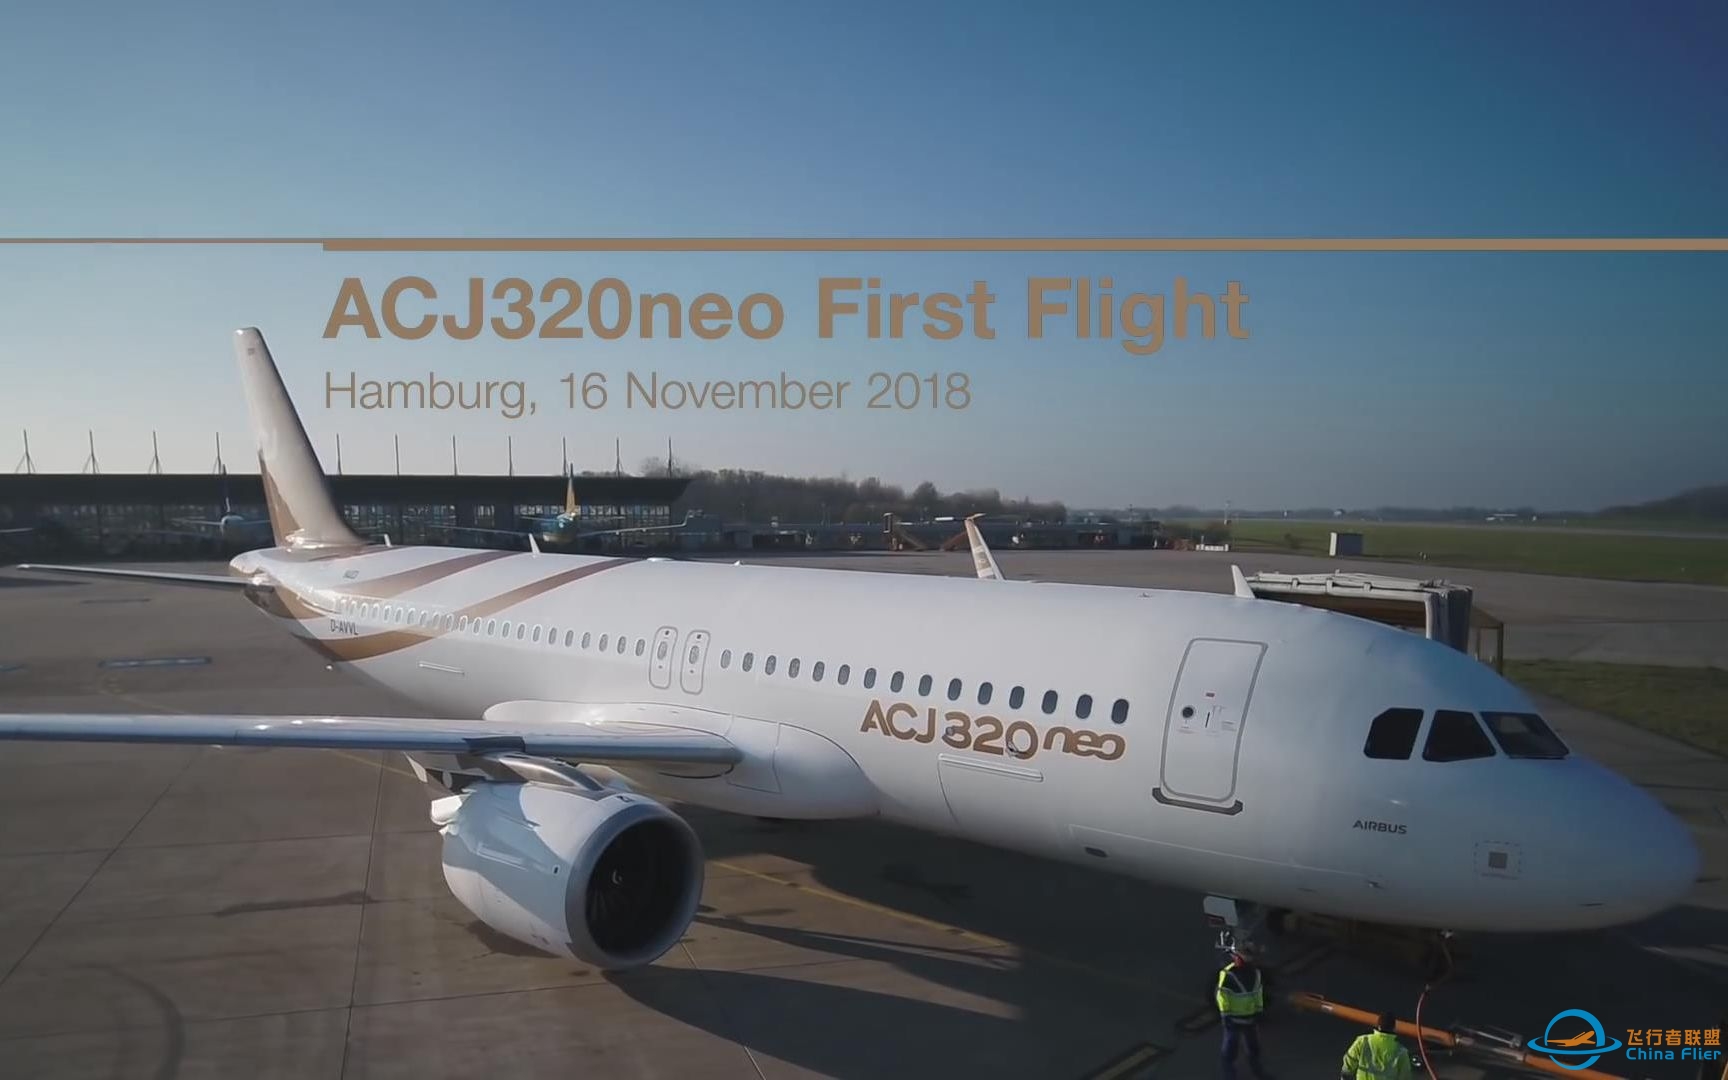 【空中客车】首架空客 ACJ320neo 公务机首飞精彩回顾-7070 